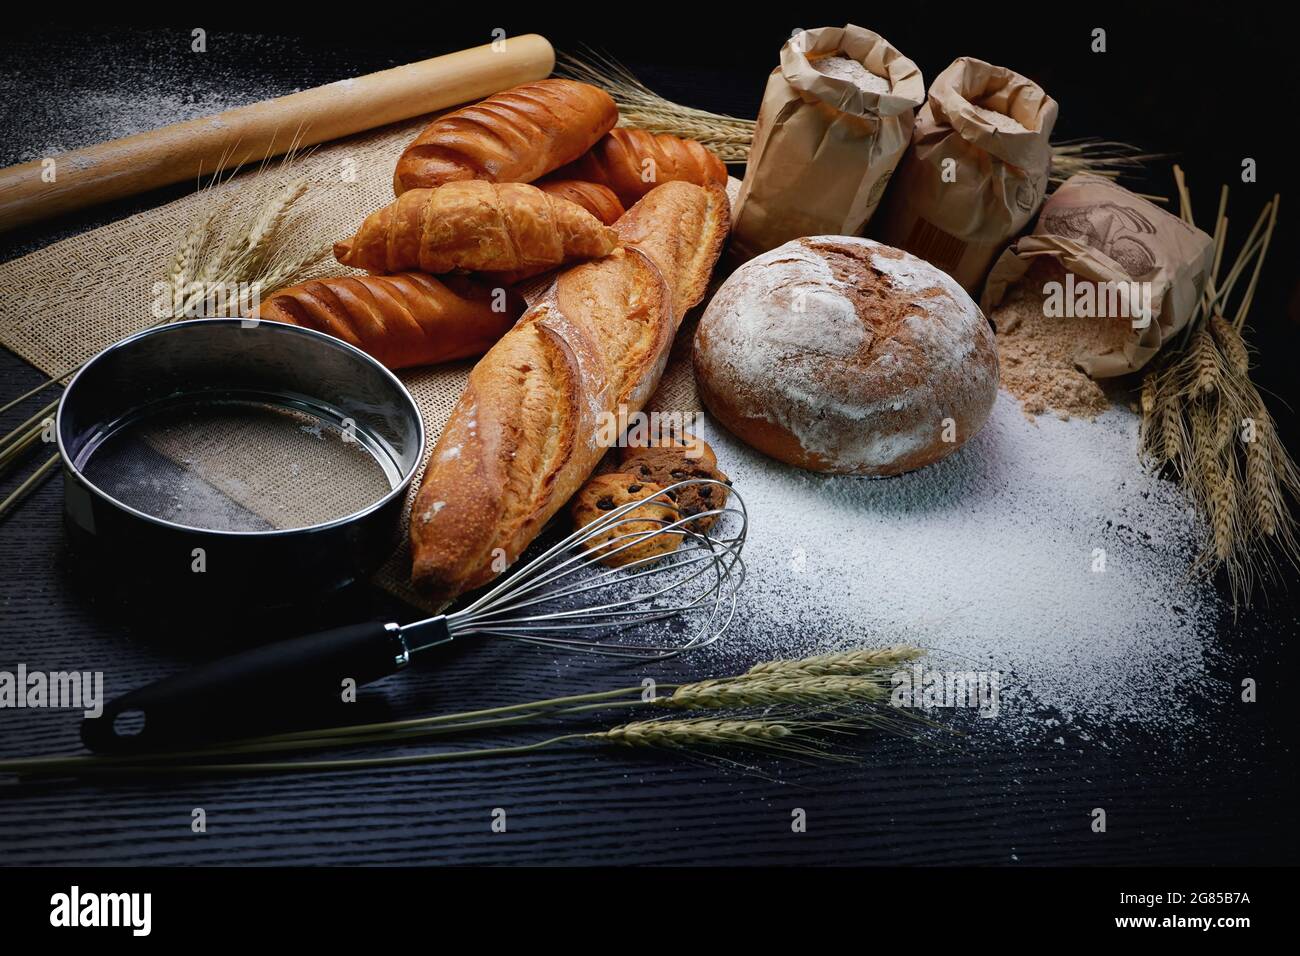 Viele Arten von Brot Studio Shot mit Zutaten Mehl Samenkorn rund um Foto Aufnahme mit hohem iso kann etwas Rauschen und Gewinn. Stockfoto